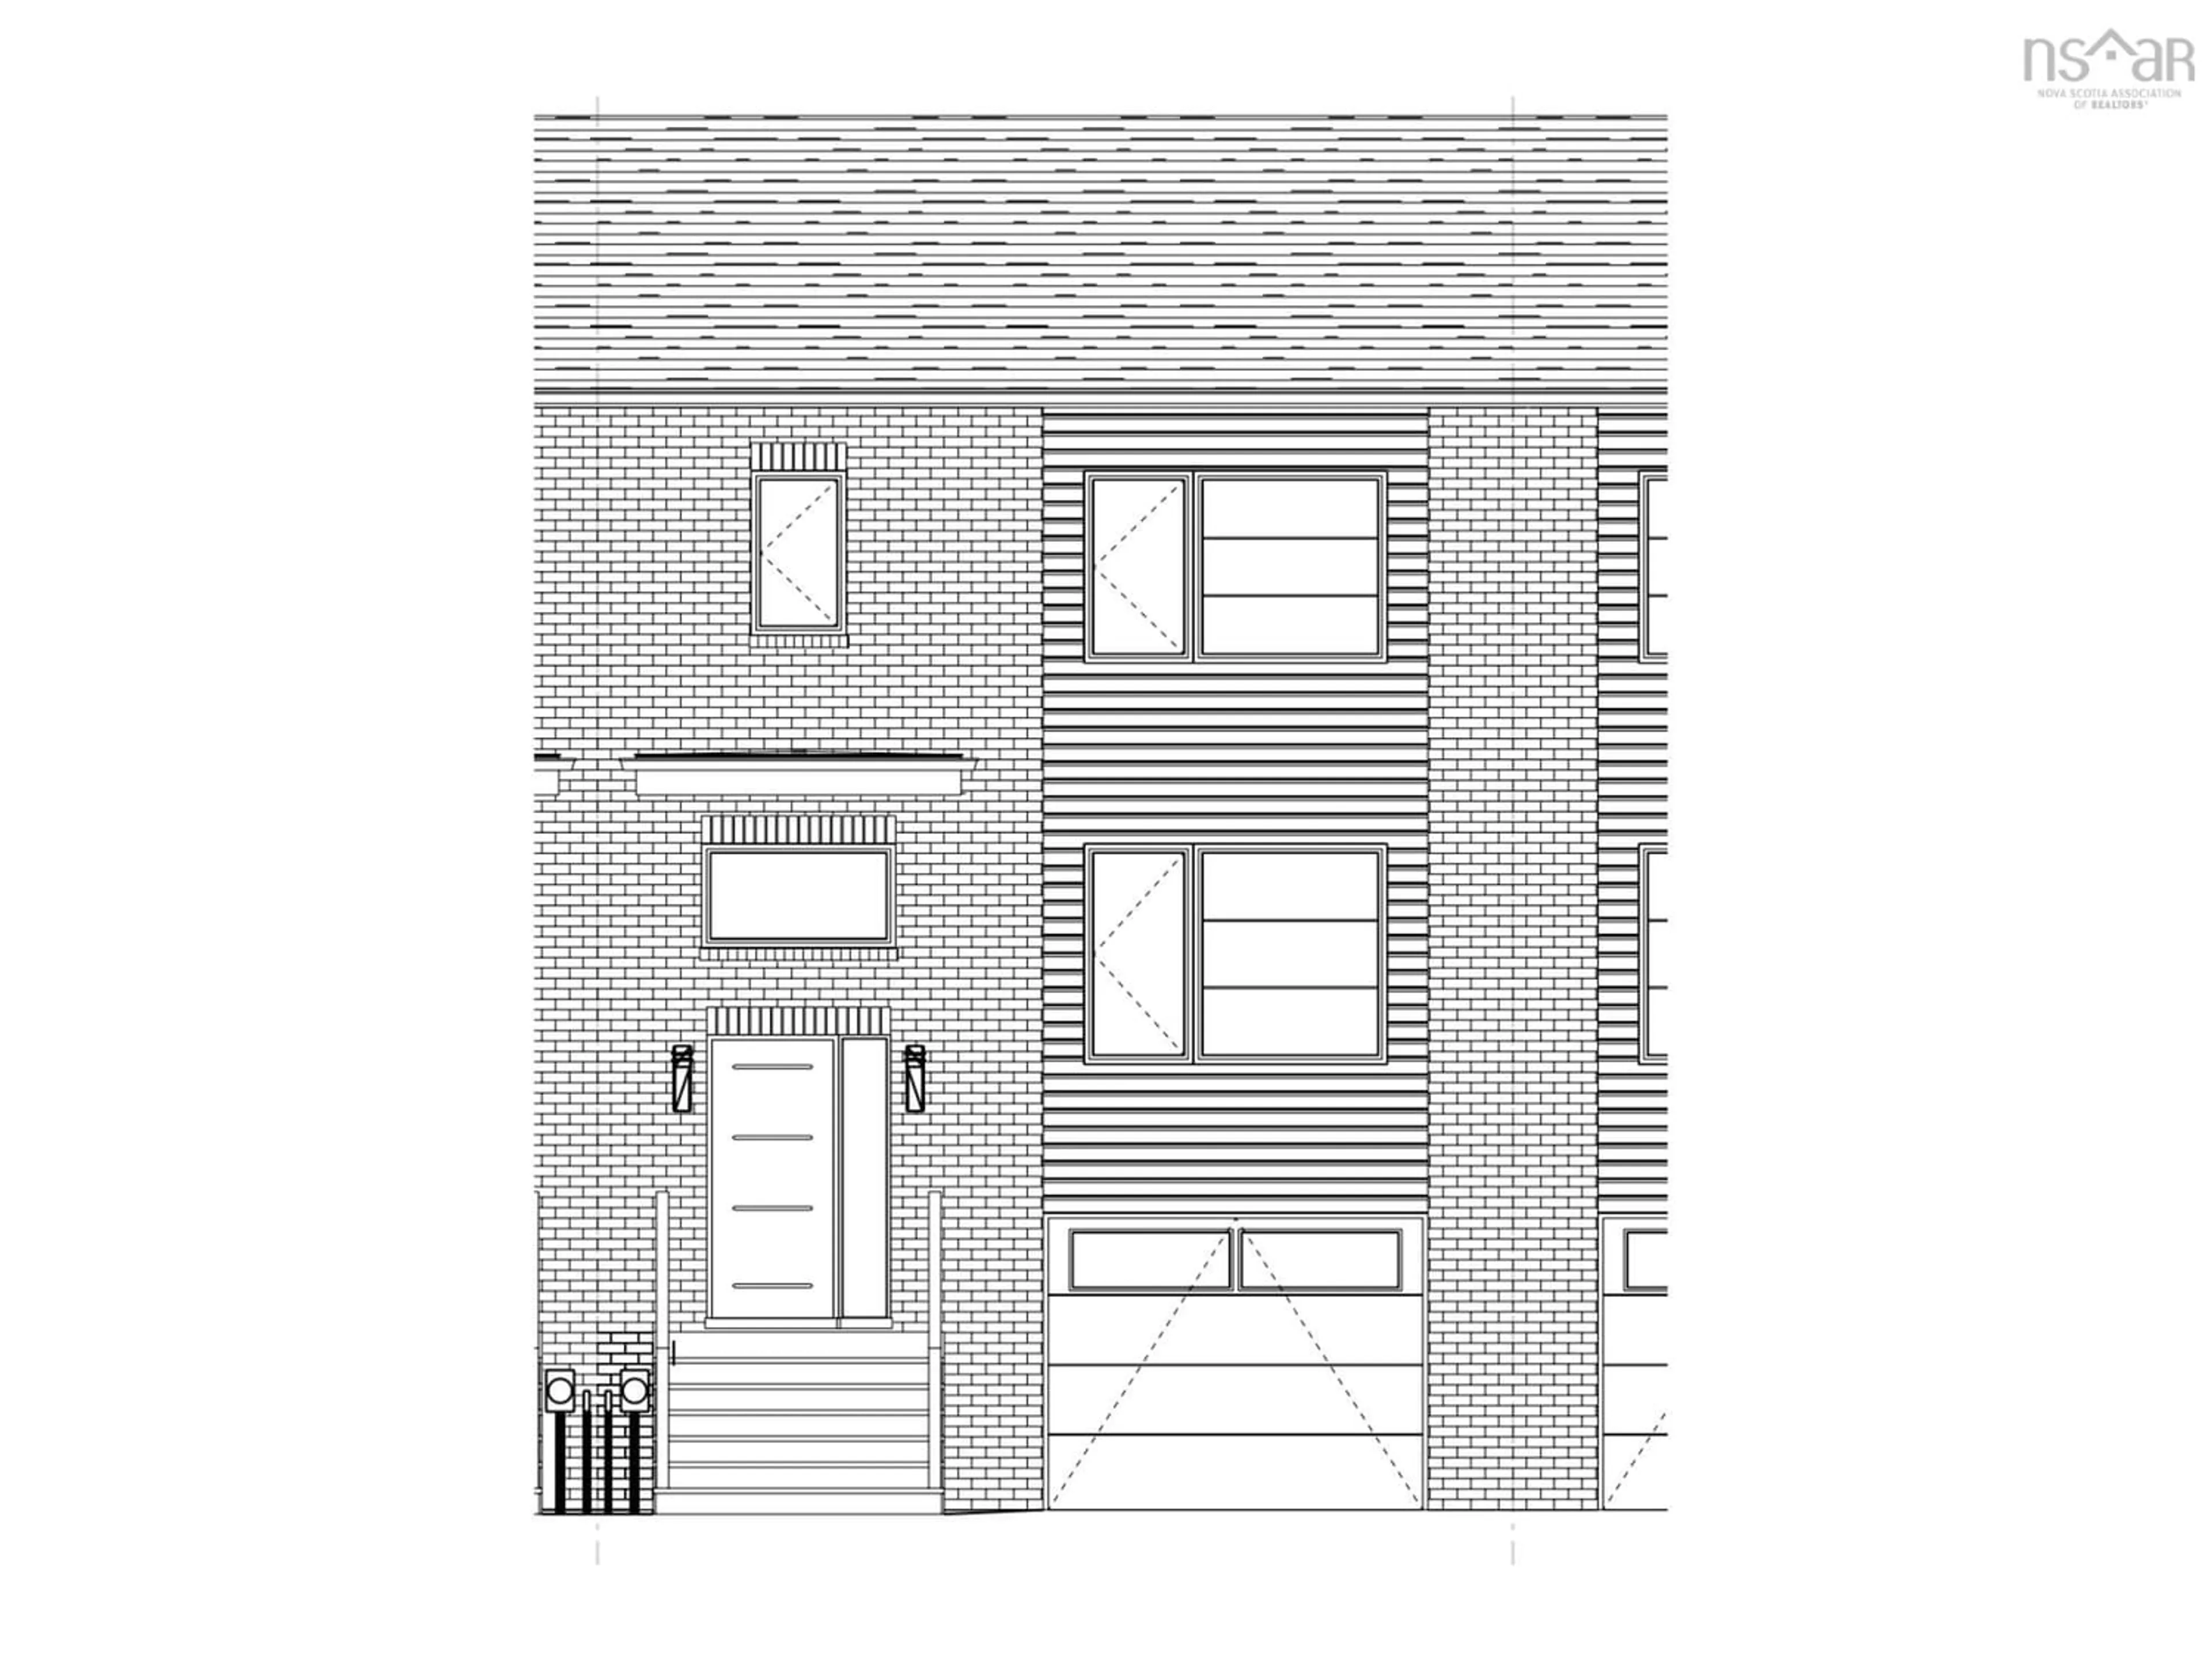 Home with brick exterior material for 3 Glenn Dr #L048A, Lantz Nova Scotia B2S 0J1